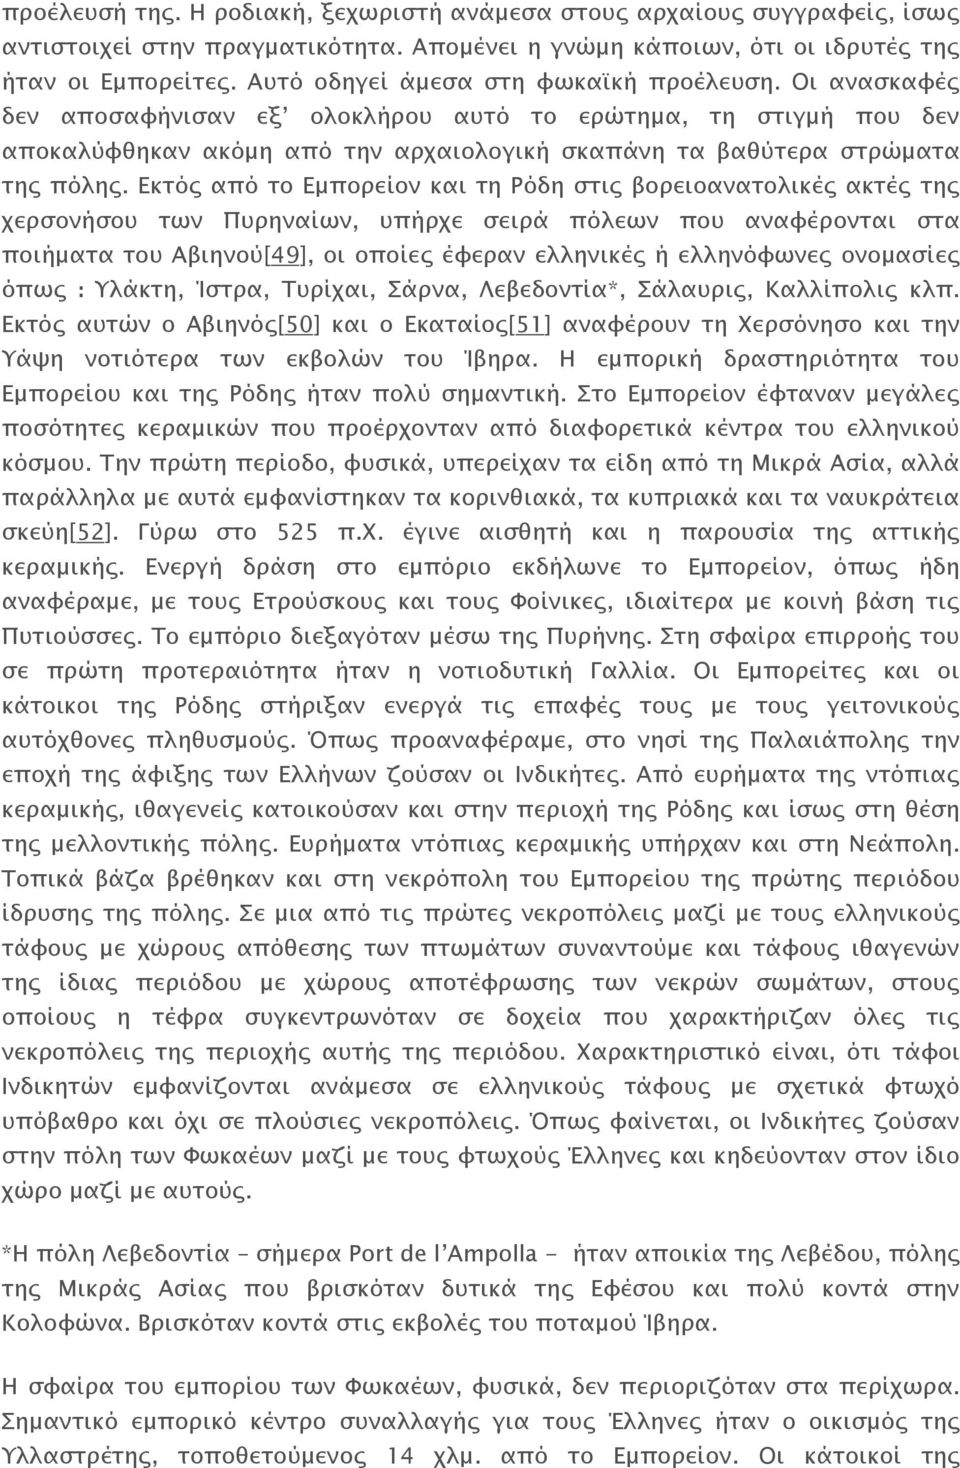 Εκτός από το Εμπορείον και τη Ρόδη στις βορειοανατολικές ακτές της χερσονήσου των Πυρηναίων, υπήρχε σειρά πόλεων που αναφέρονται στα ποιήματα του Αβιηνού[49], οι οποίες έφεραν ελληνικές ή ελληνόφωνες